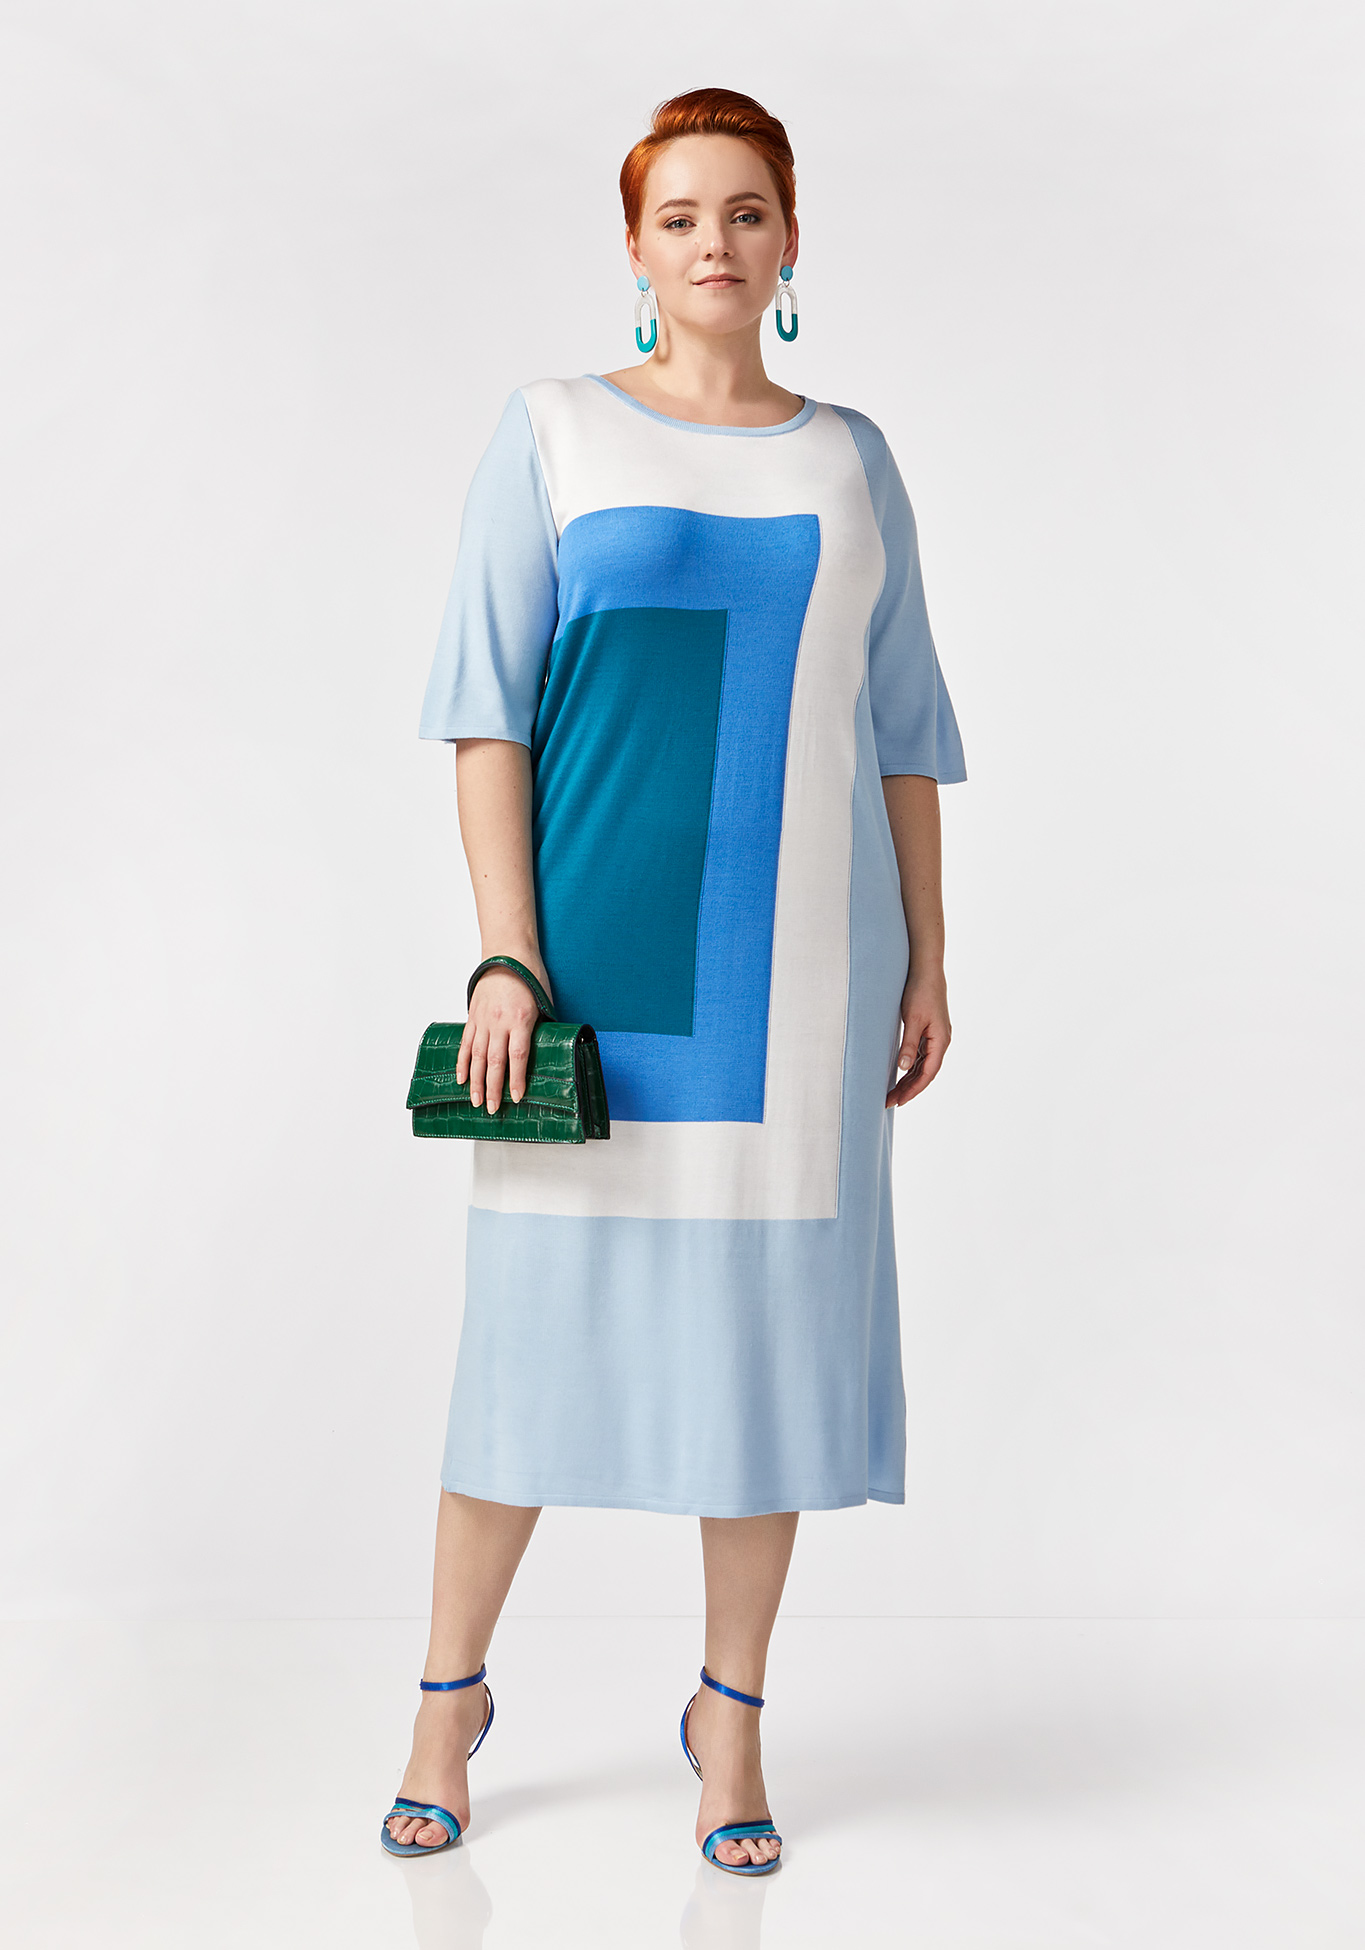 Платье с принтом "коллор блок" Vivawool, размер 42, цвет голубой - фото 2